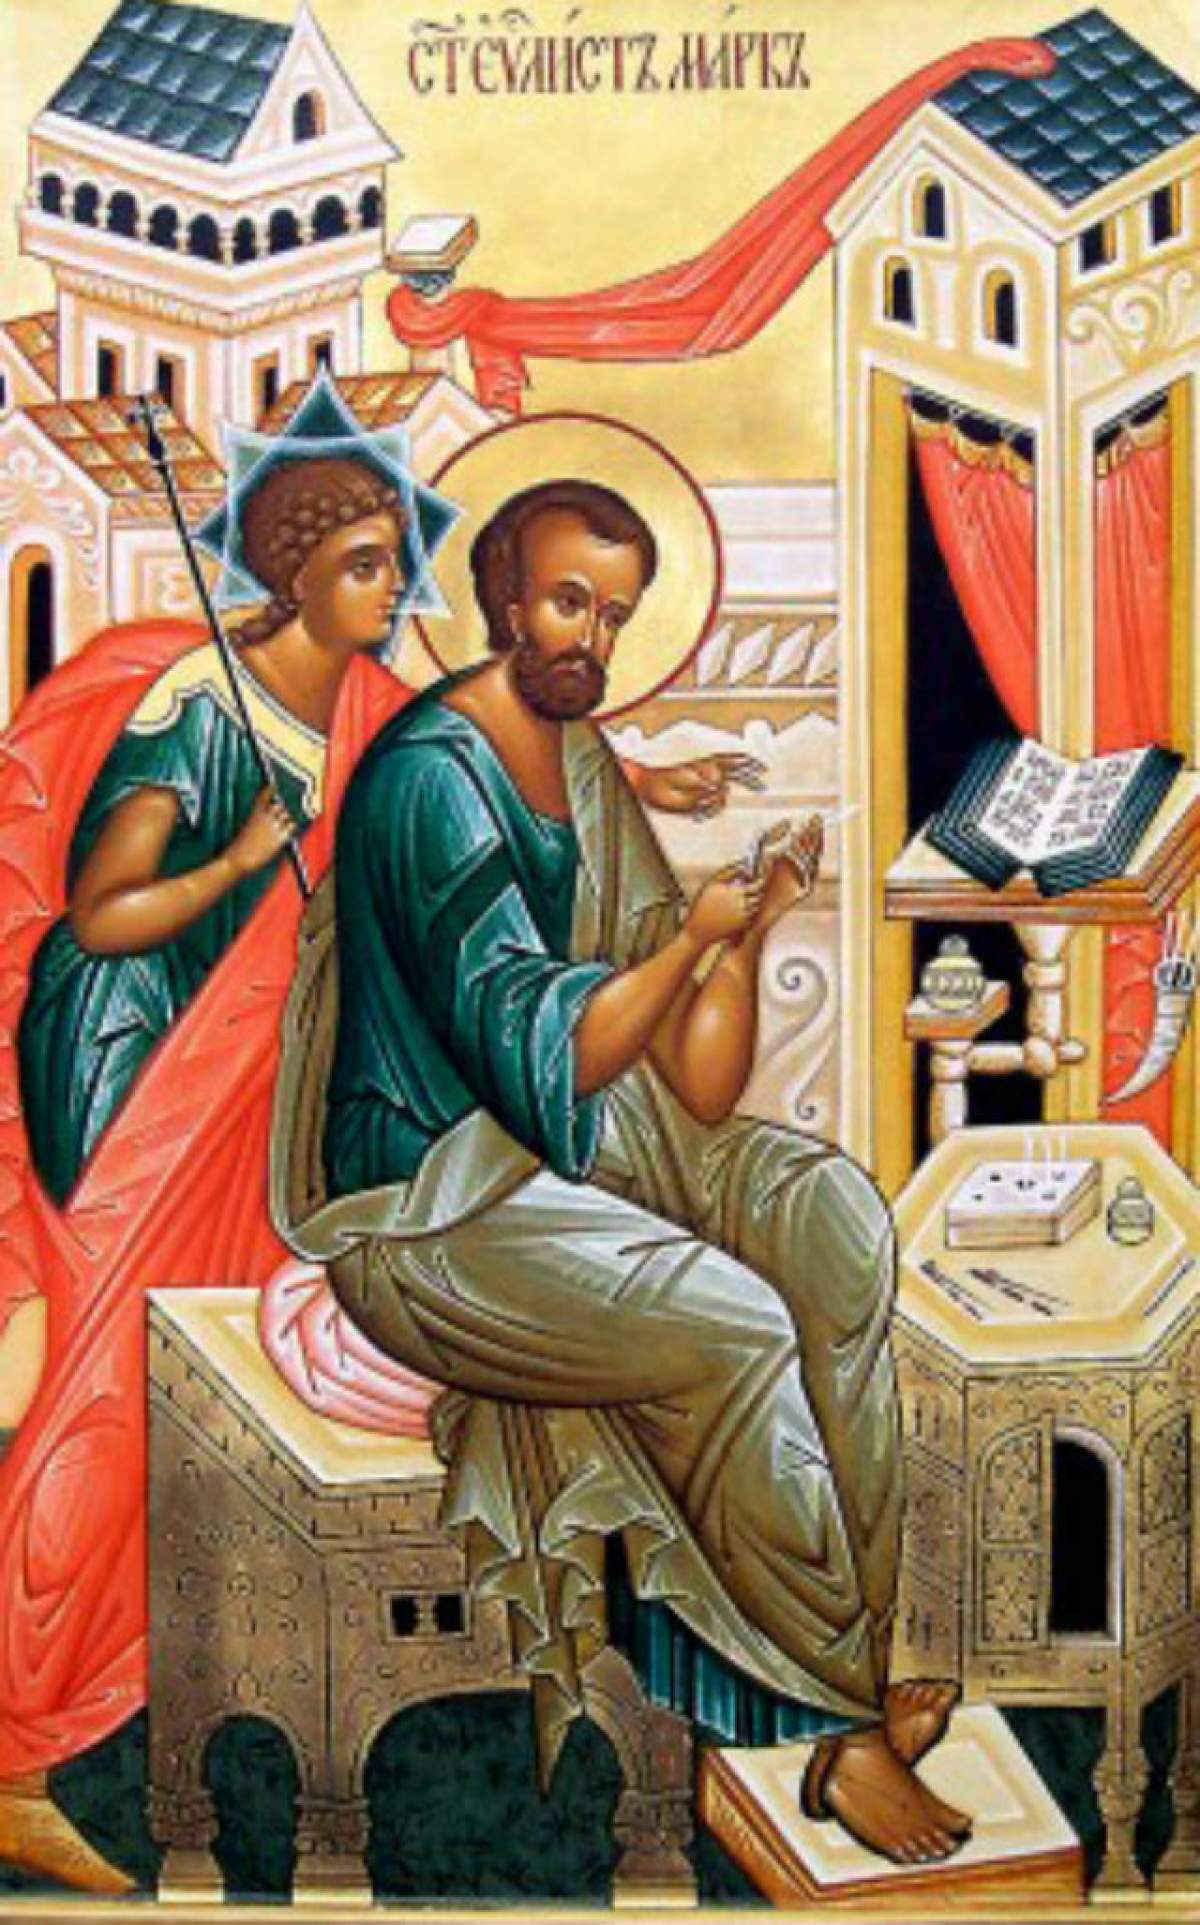 ZI DE SĂRBĂTOARE pentru creştinii ortodocşi! Astăzi, prăznuim doi sfinţi